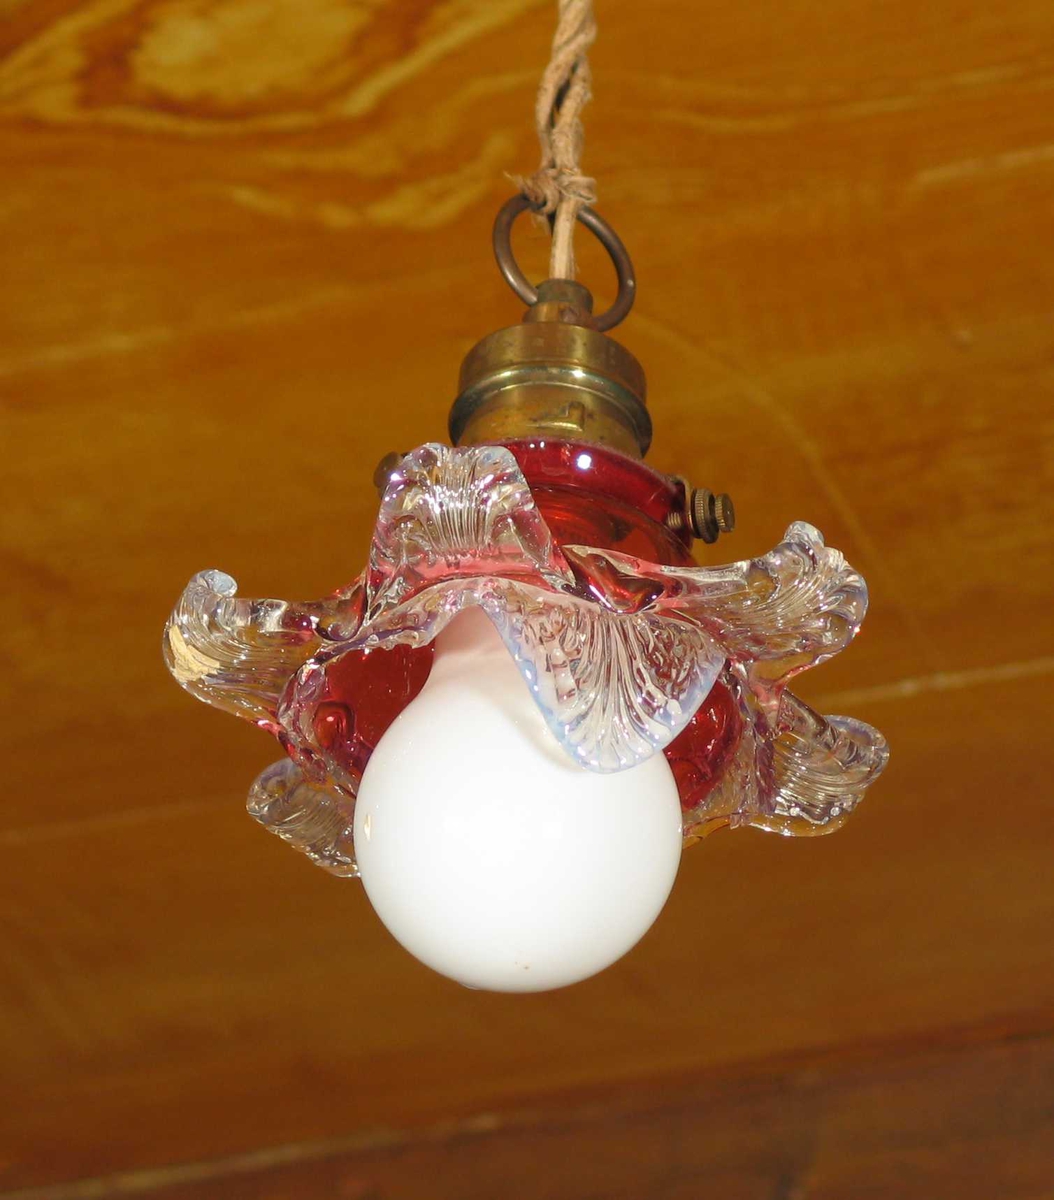 Taklampe i metall med lys rød bladformet glasskjerm. Henger i gammel vridd ledning og er ikke i bruk.